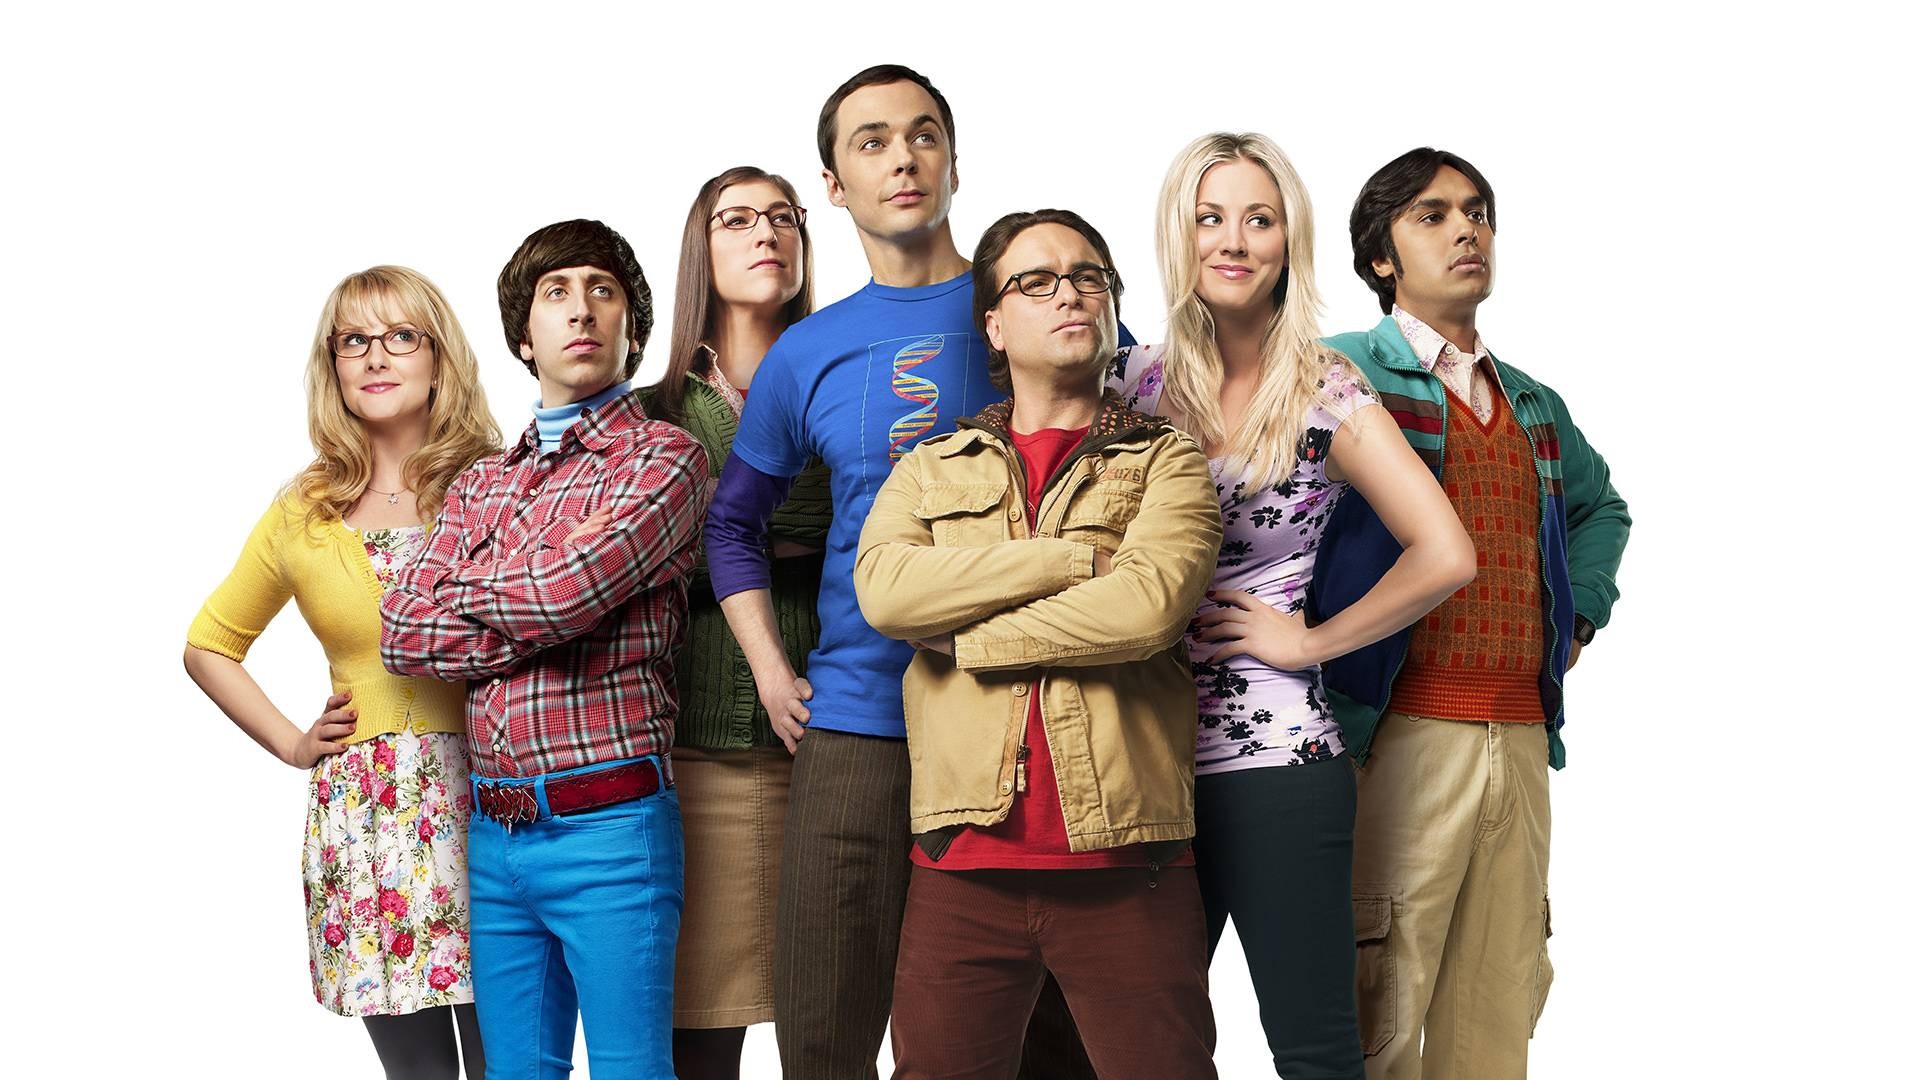 Astros de 'The Big Bang Theory' pedem reajuste salarial (Foto: Divulgação)